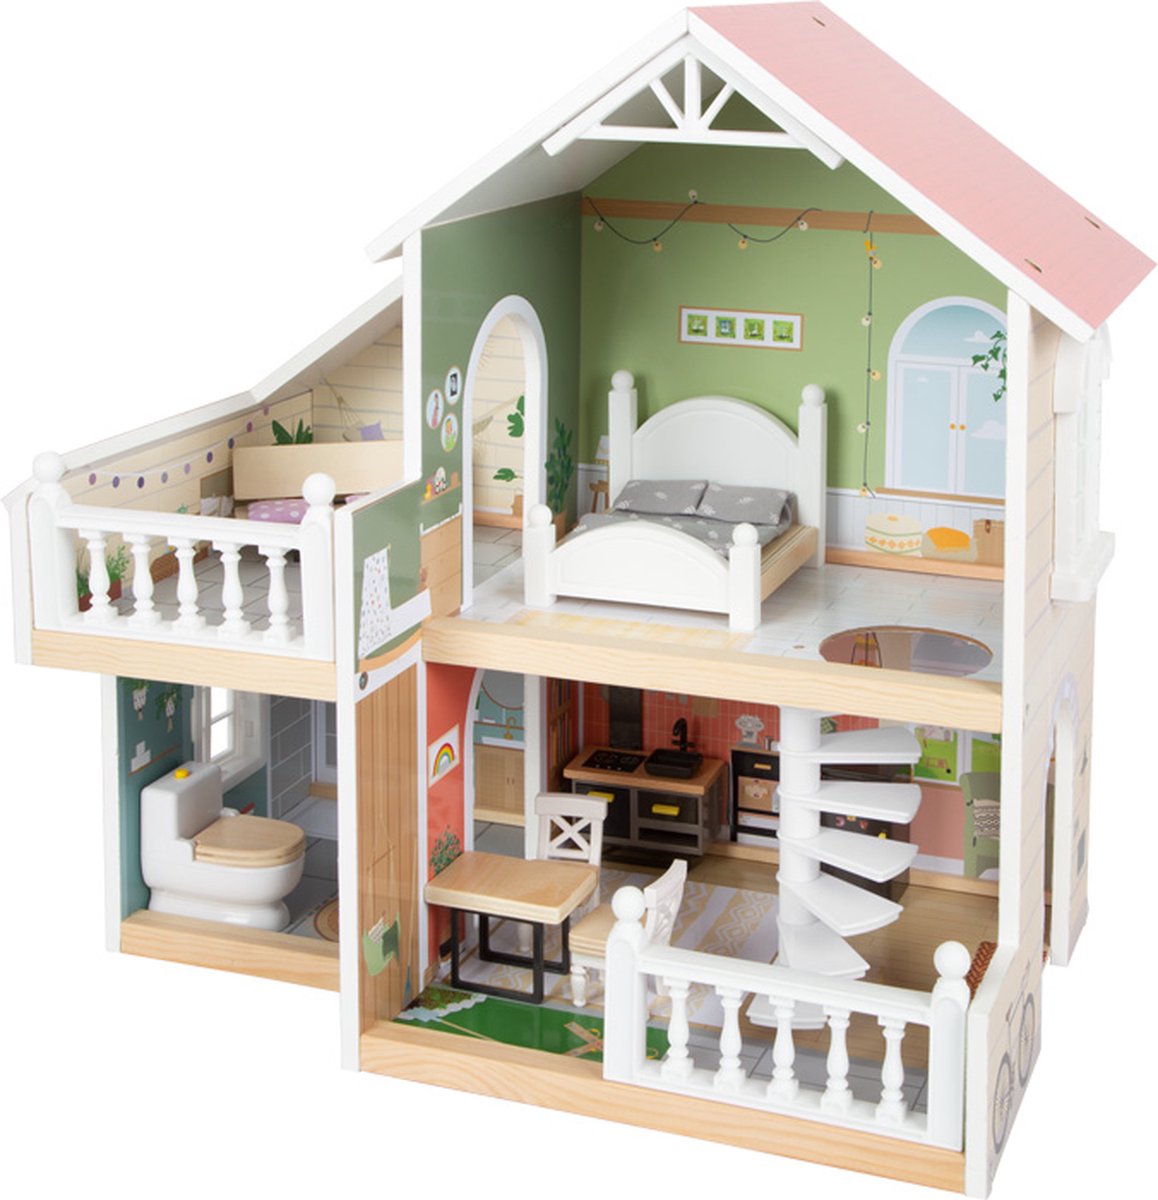 Poppenhuis - Compact Urban Villa - Houten speelgoed vanaf 3 jaar